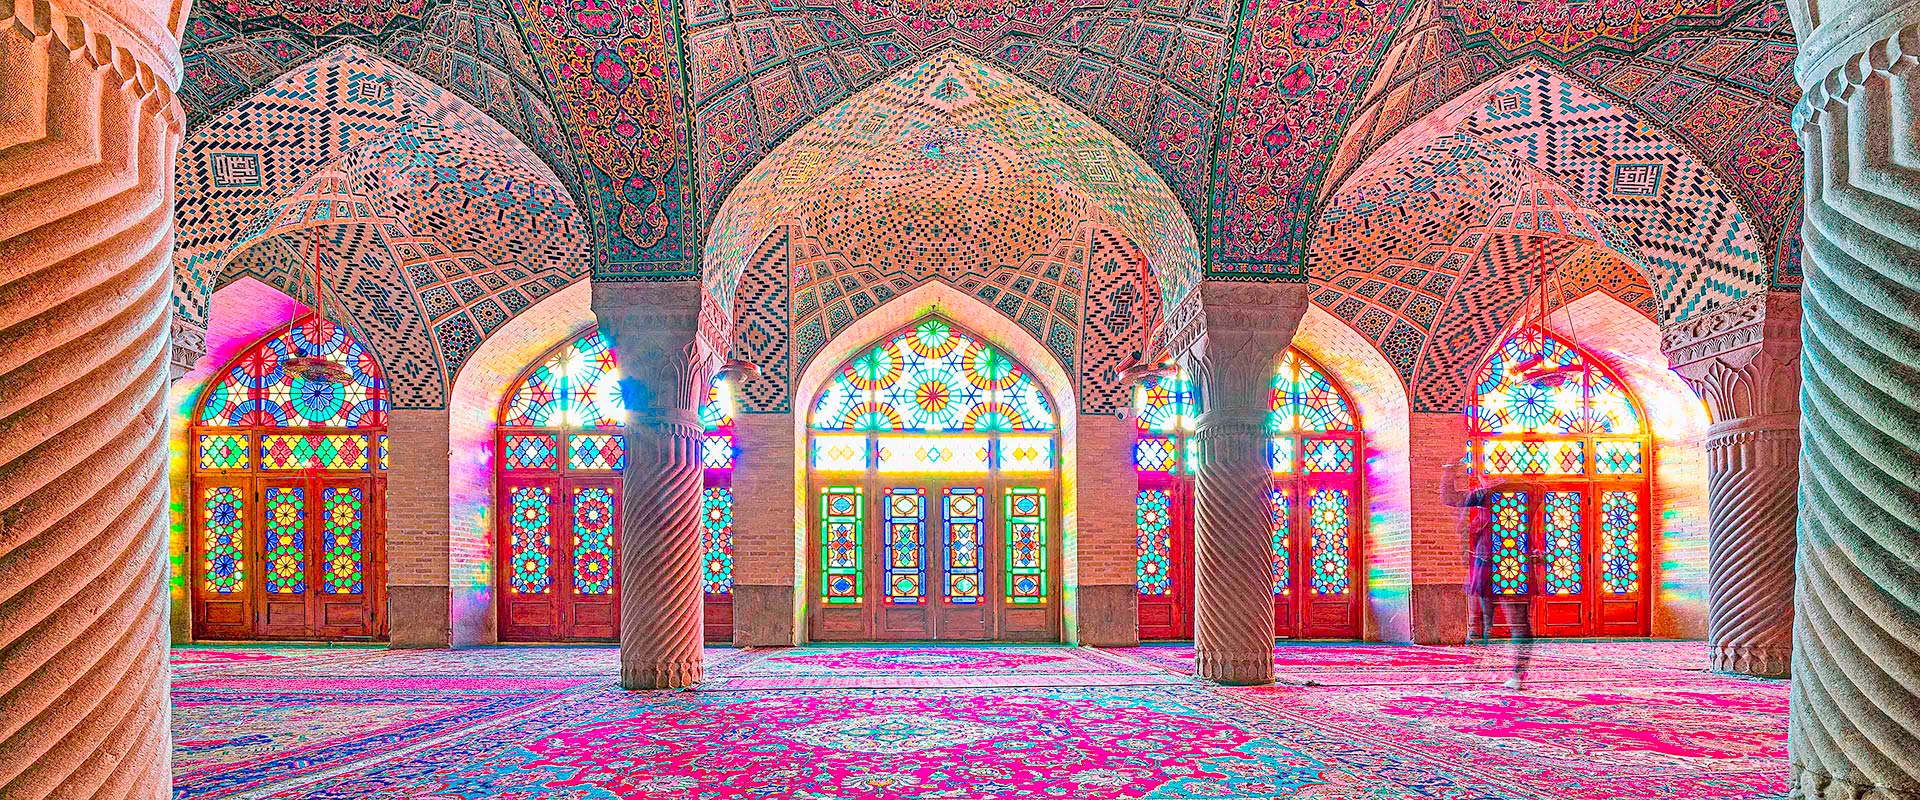 Iran pinke Moschee Shiraz - fotografiert auf einer Fotoreise durch den Iran.